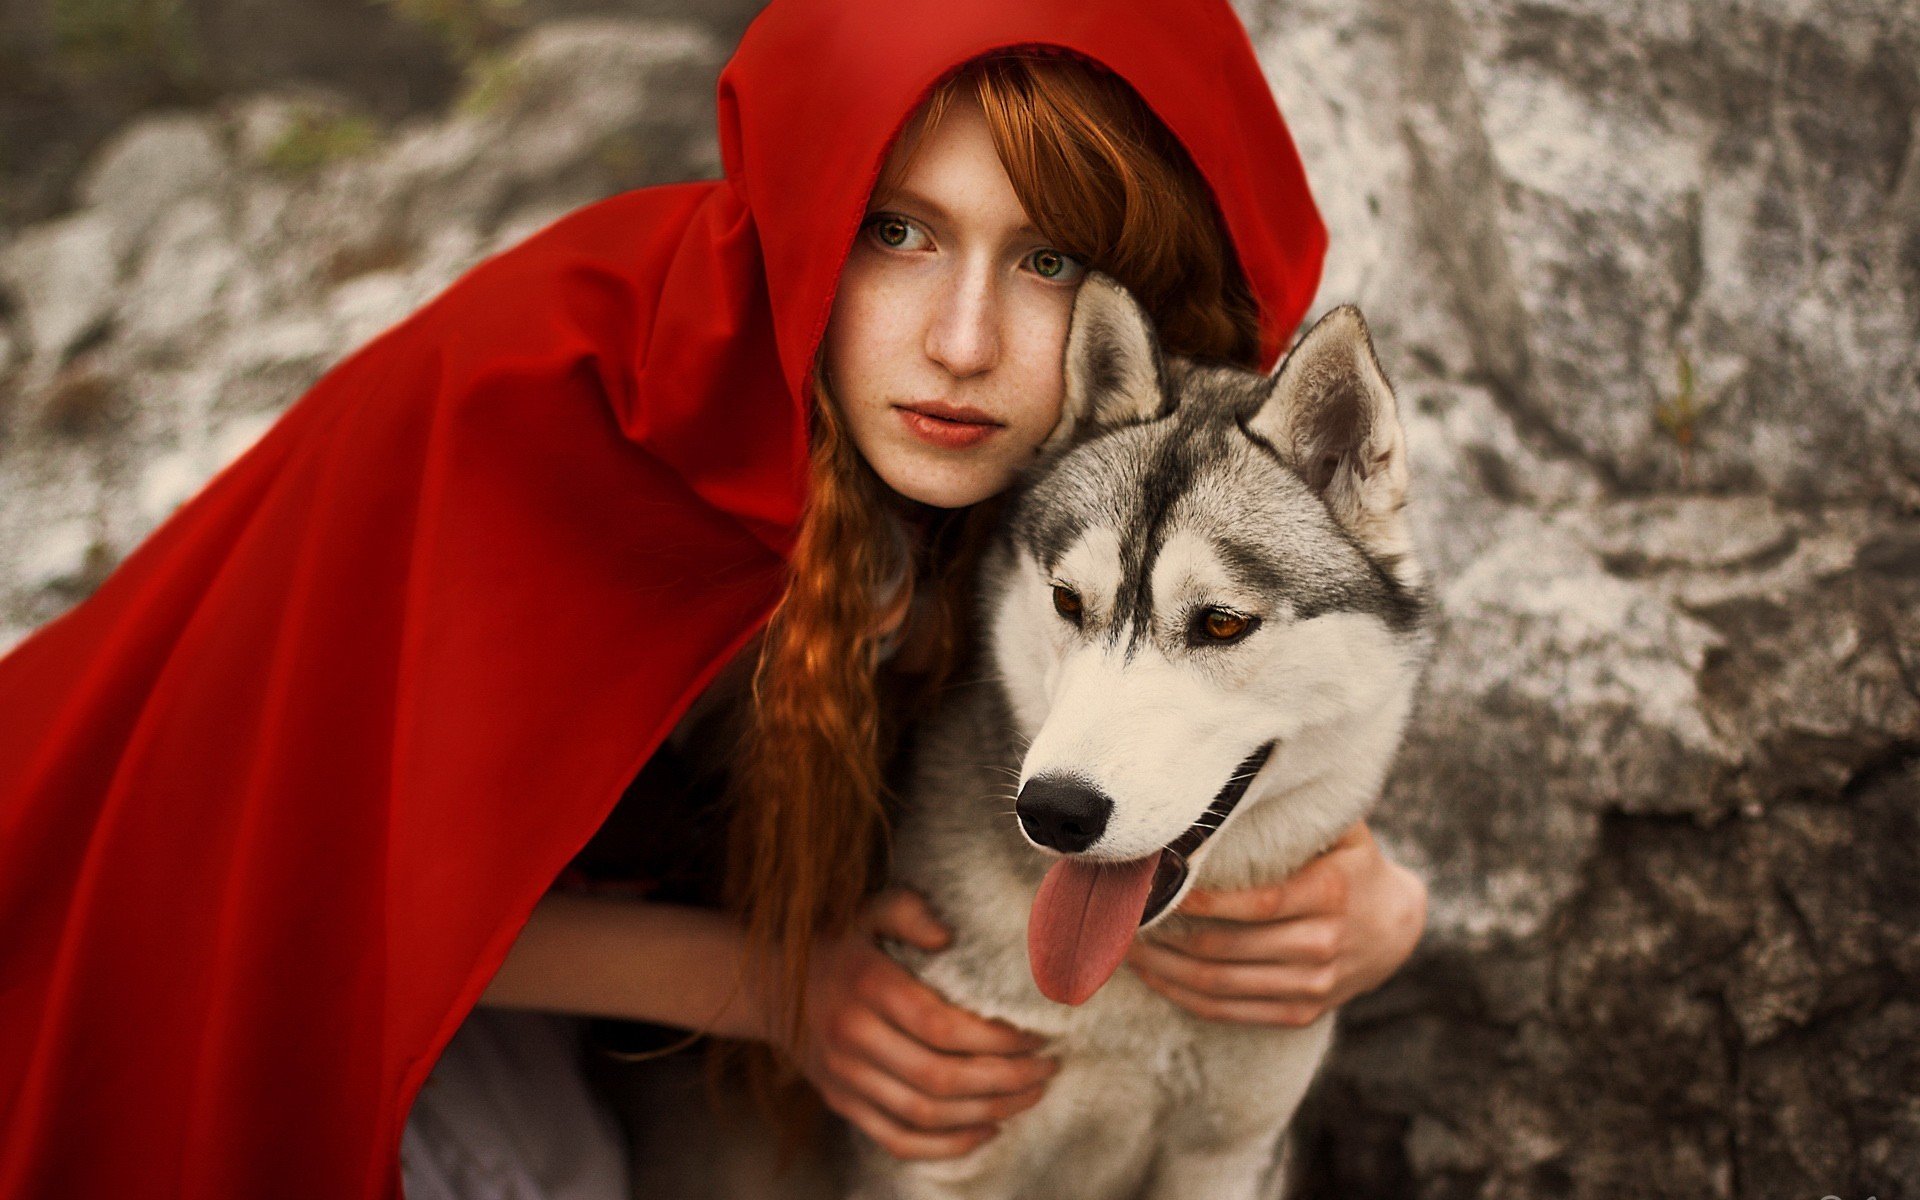 красна шапочка плащ волк красная шапочка рыжий косплей